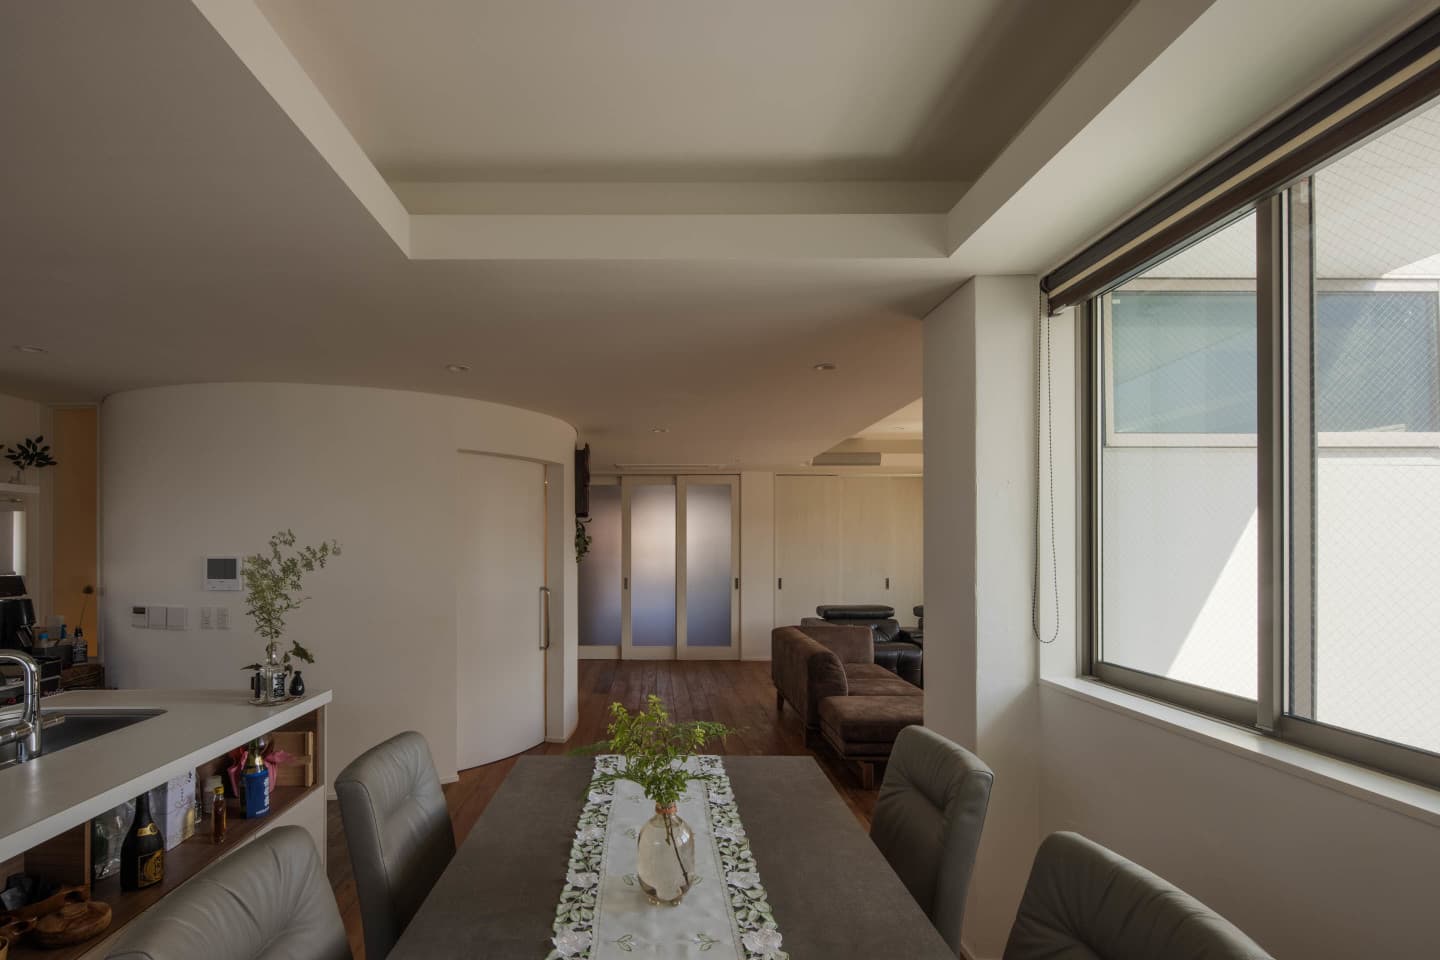 大阪の建築家・中平勝が設計した車椅子対応住宅の円筒形の階段室